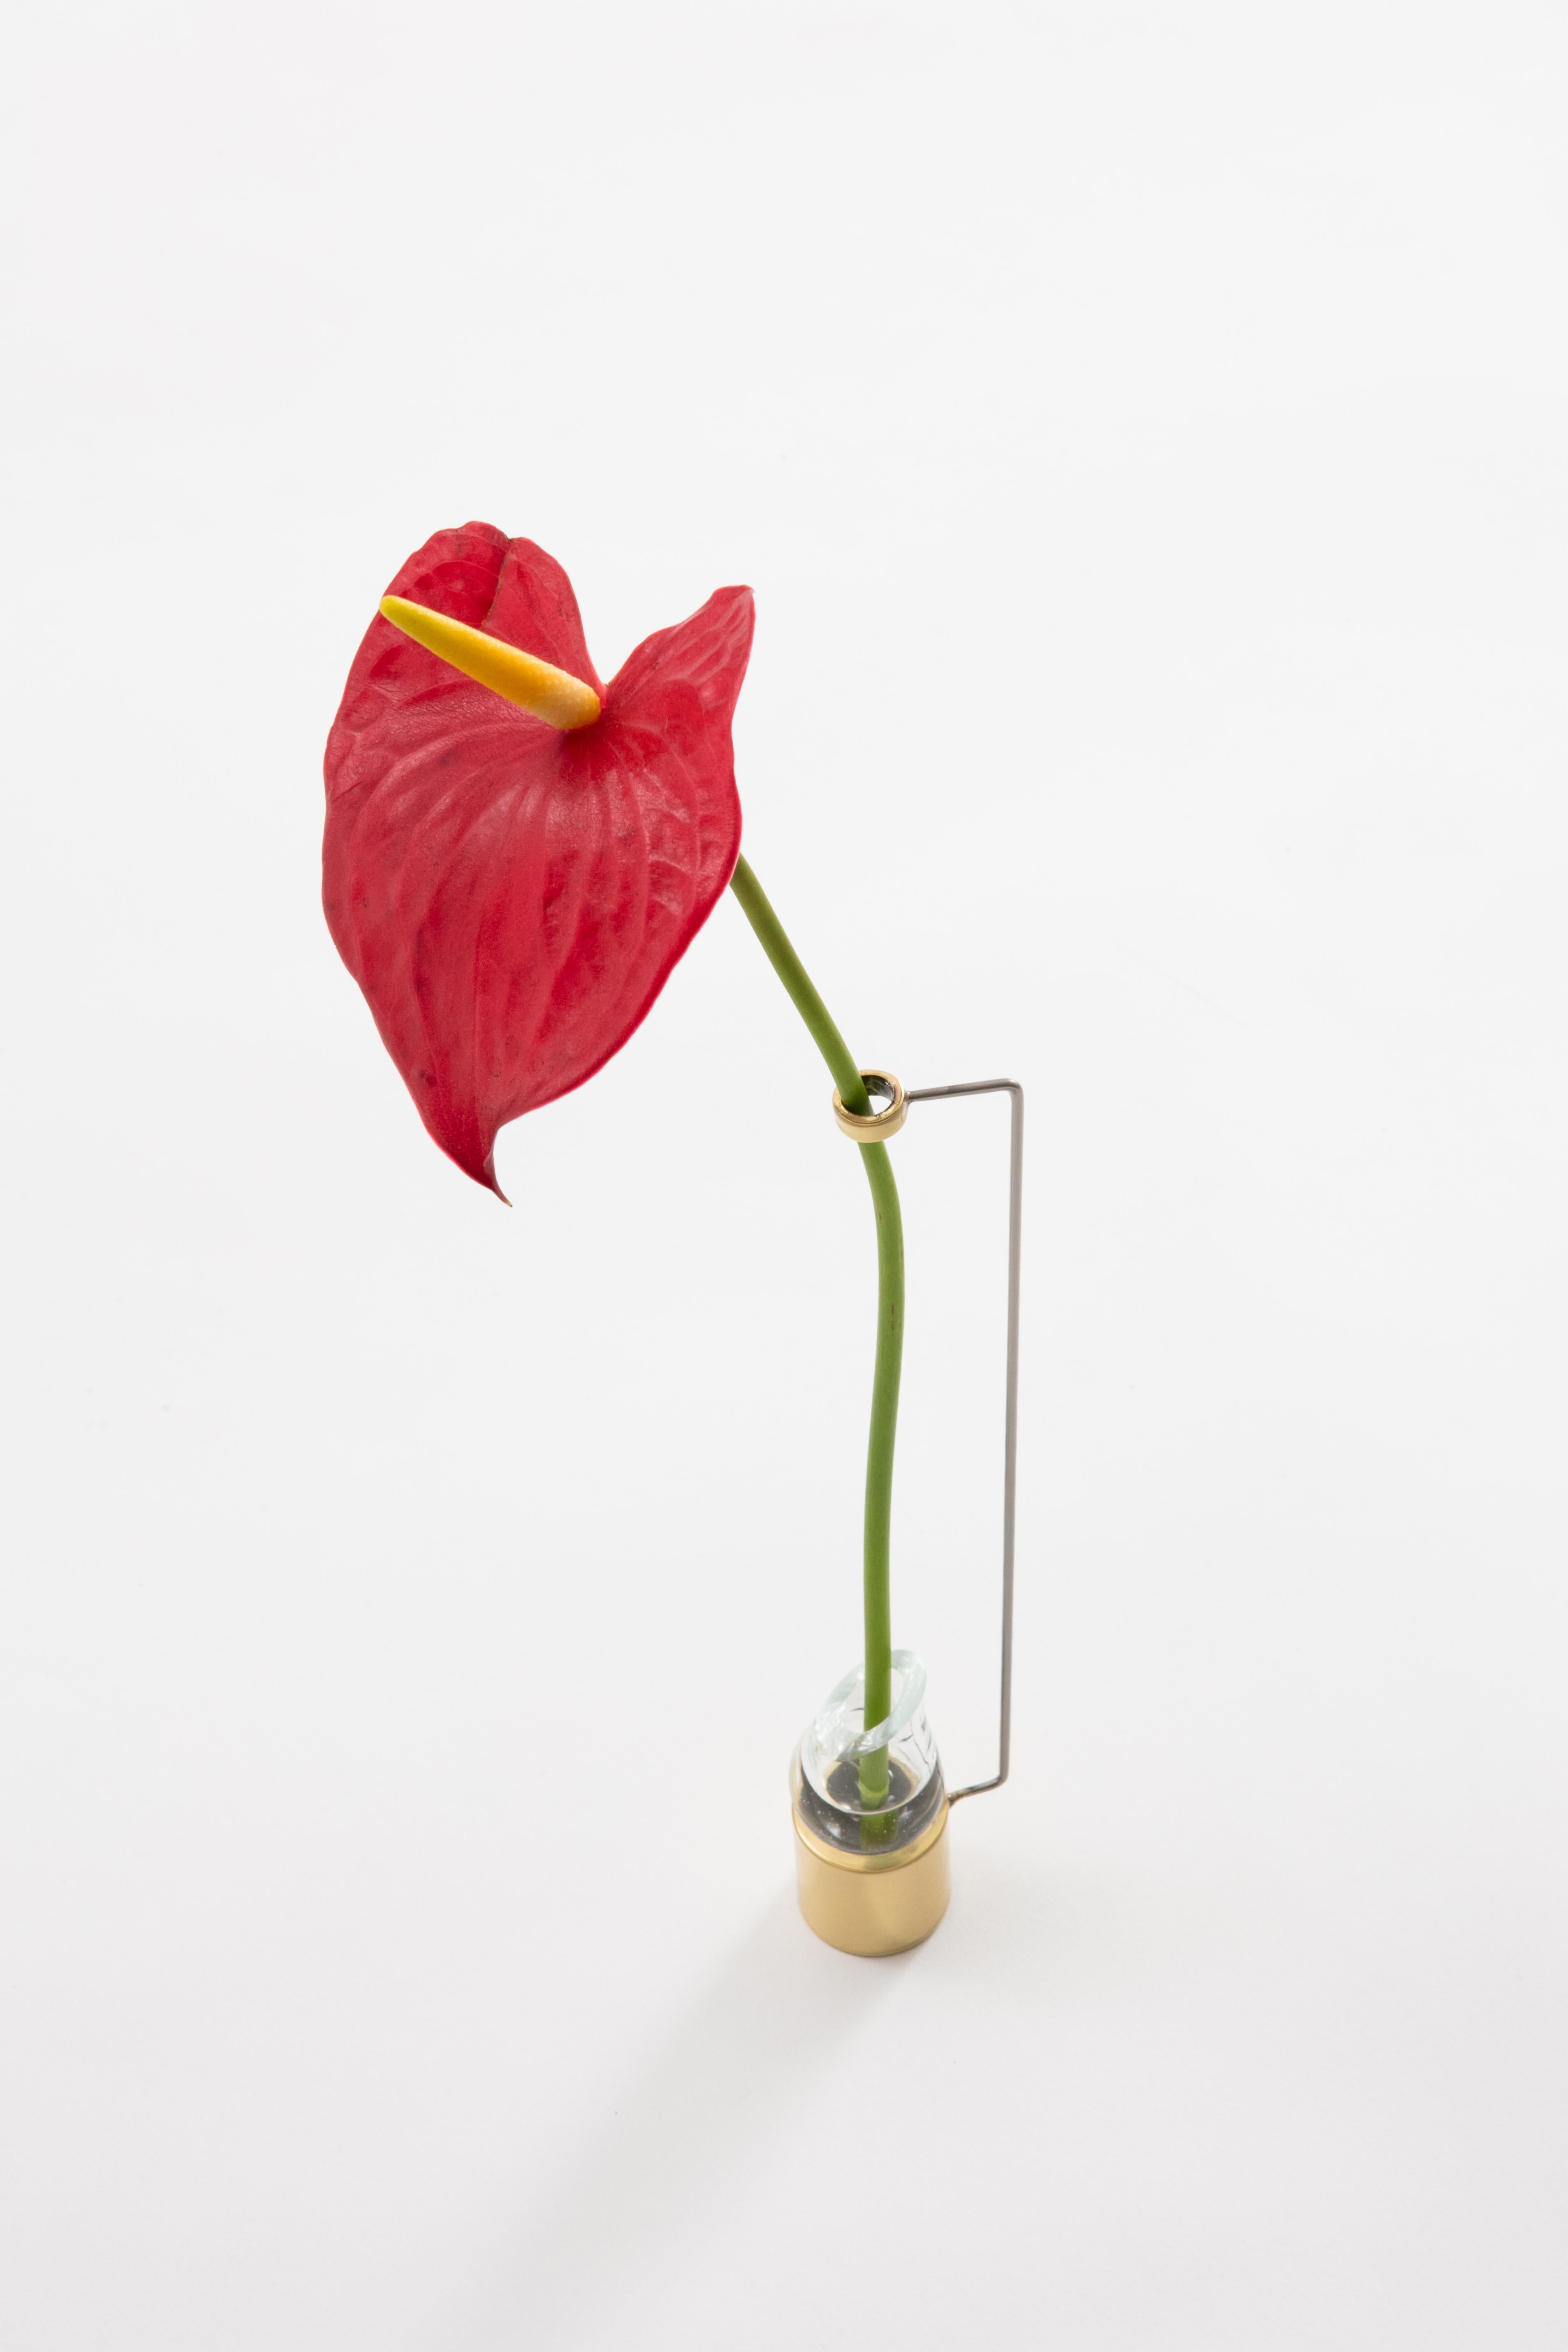 Le vase Piccolo de Paulo Goldstein, design contemporain brésilien, fait partie d'une série de vases inspirés par l'observation des lignes naturelles des fleurs et des feuilles qu'ils contiennent. Les lignes des vases ont été conçues pour mettre en